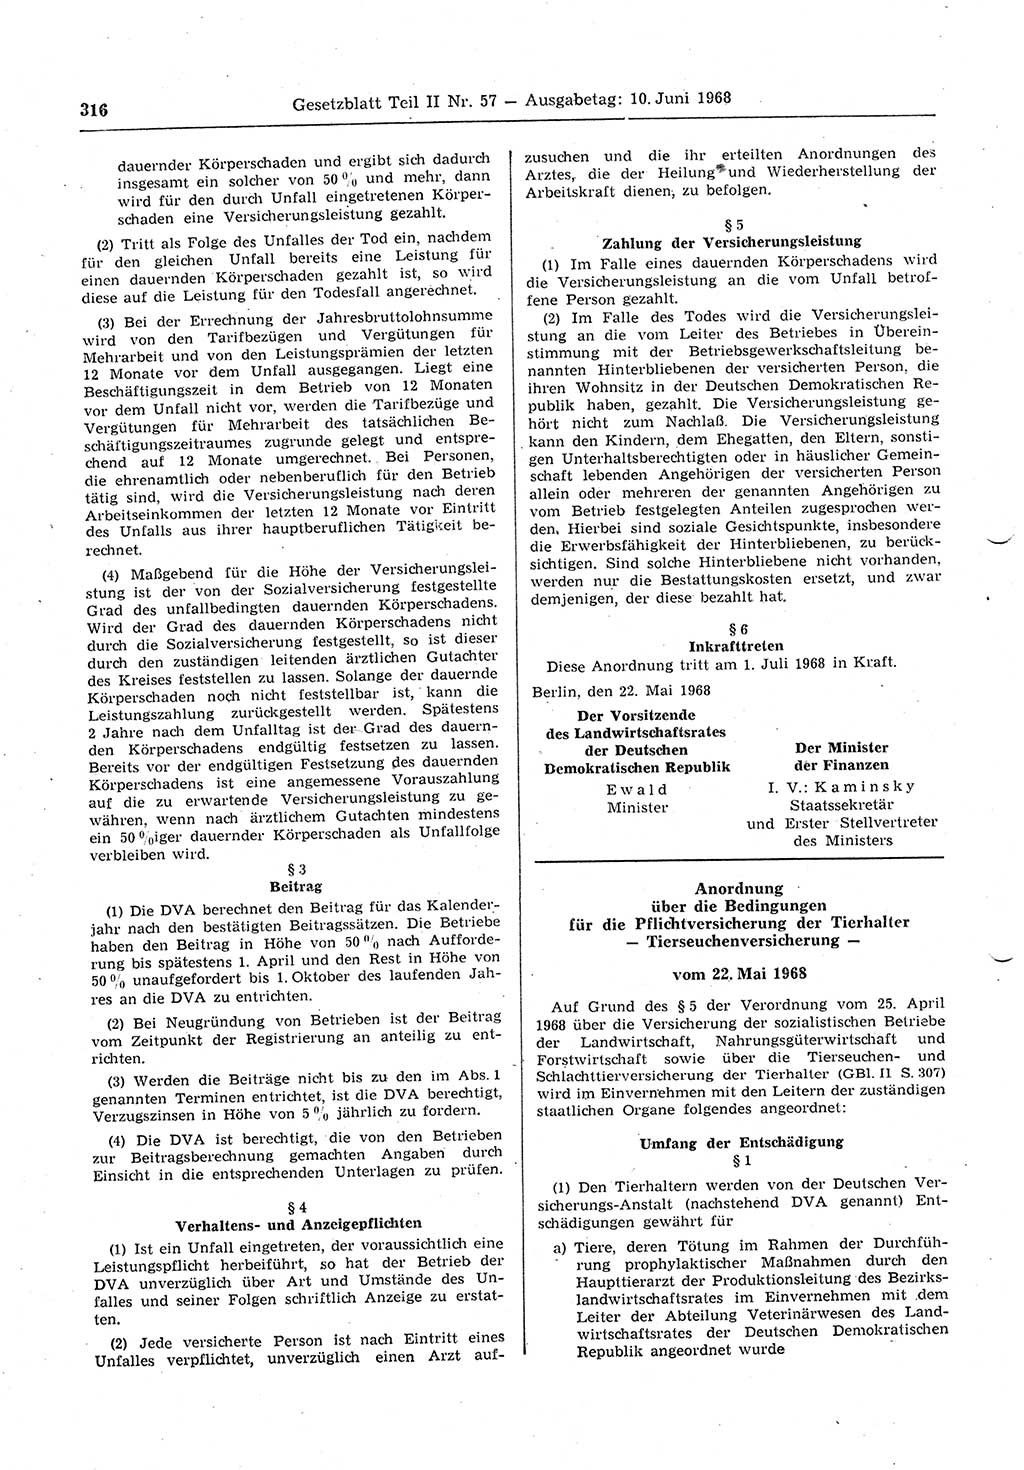 Gesetzblatt (GBl.) der Deutschen Demokratischen Republik (DDR) Teil ⅠⅠ 1968, Seite 316 (GBl. DDR ⅠⅠ 1968, S. 316)